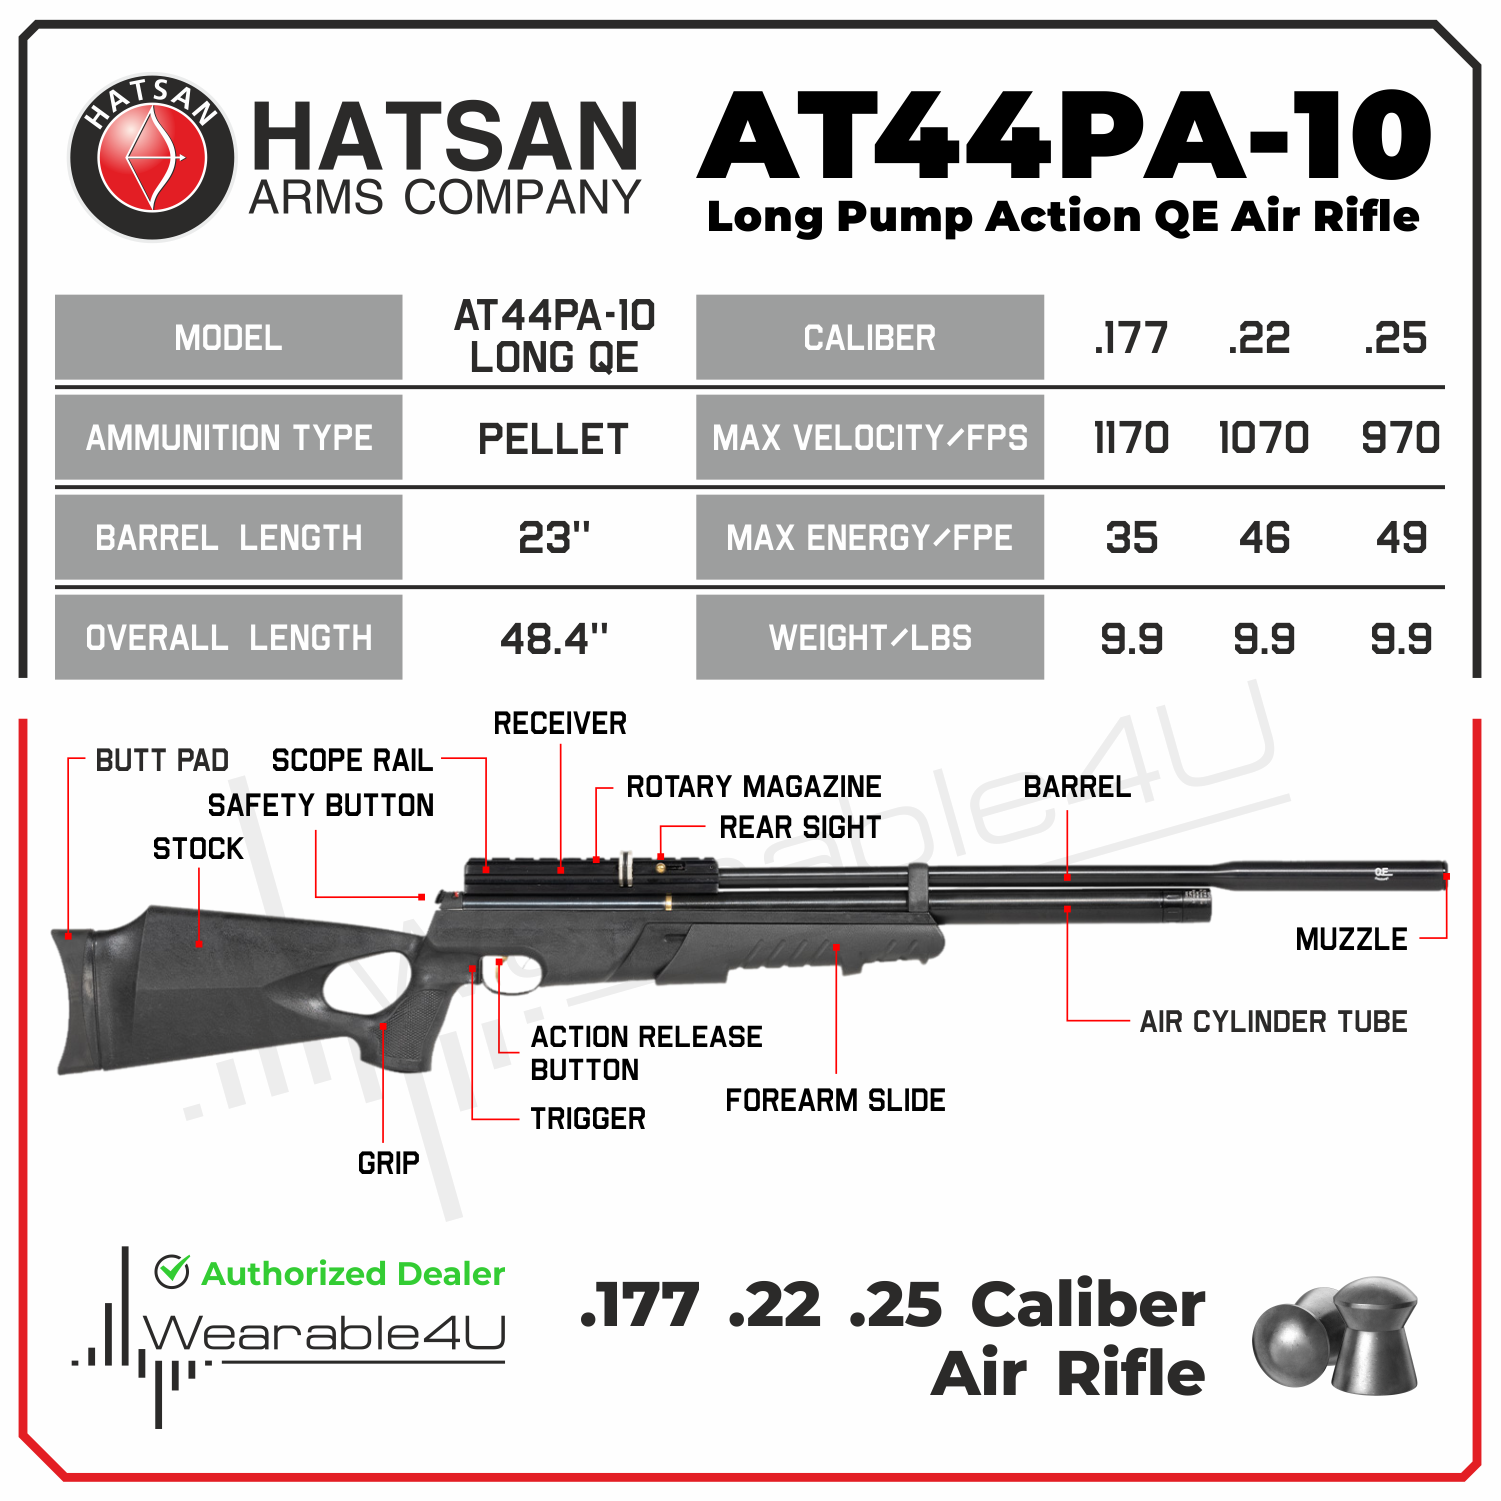 Hatsan AT44-10 Carabina Pcp Pack 